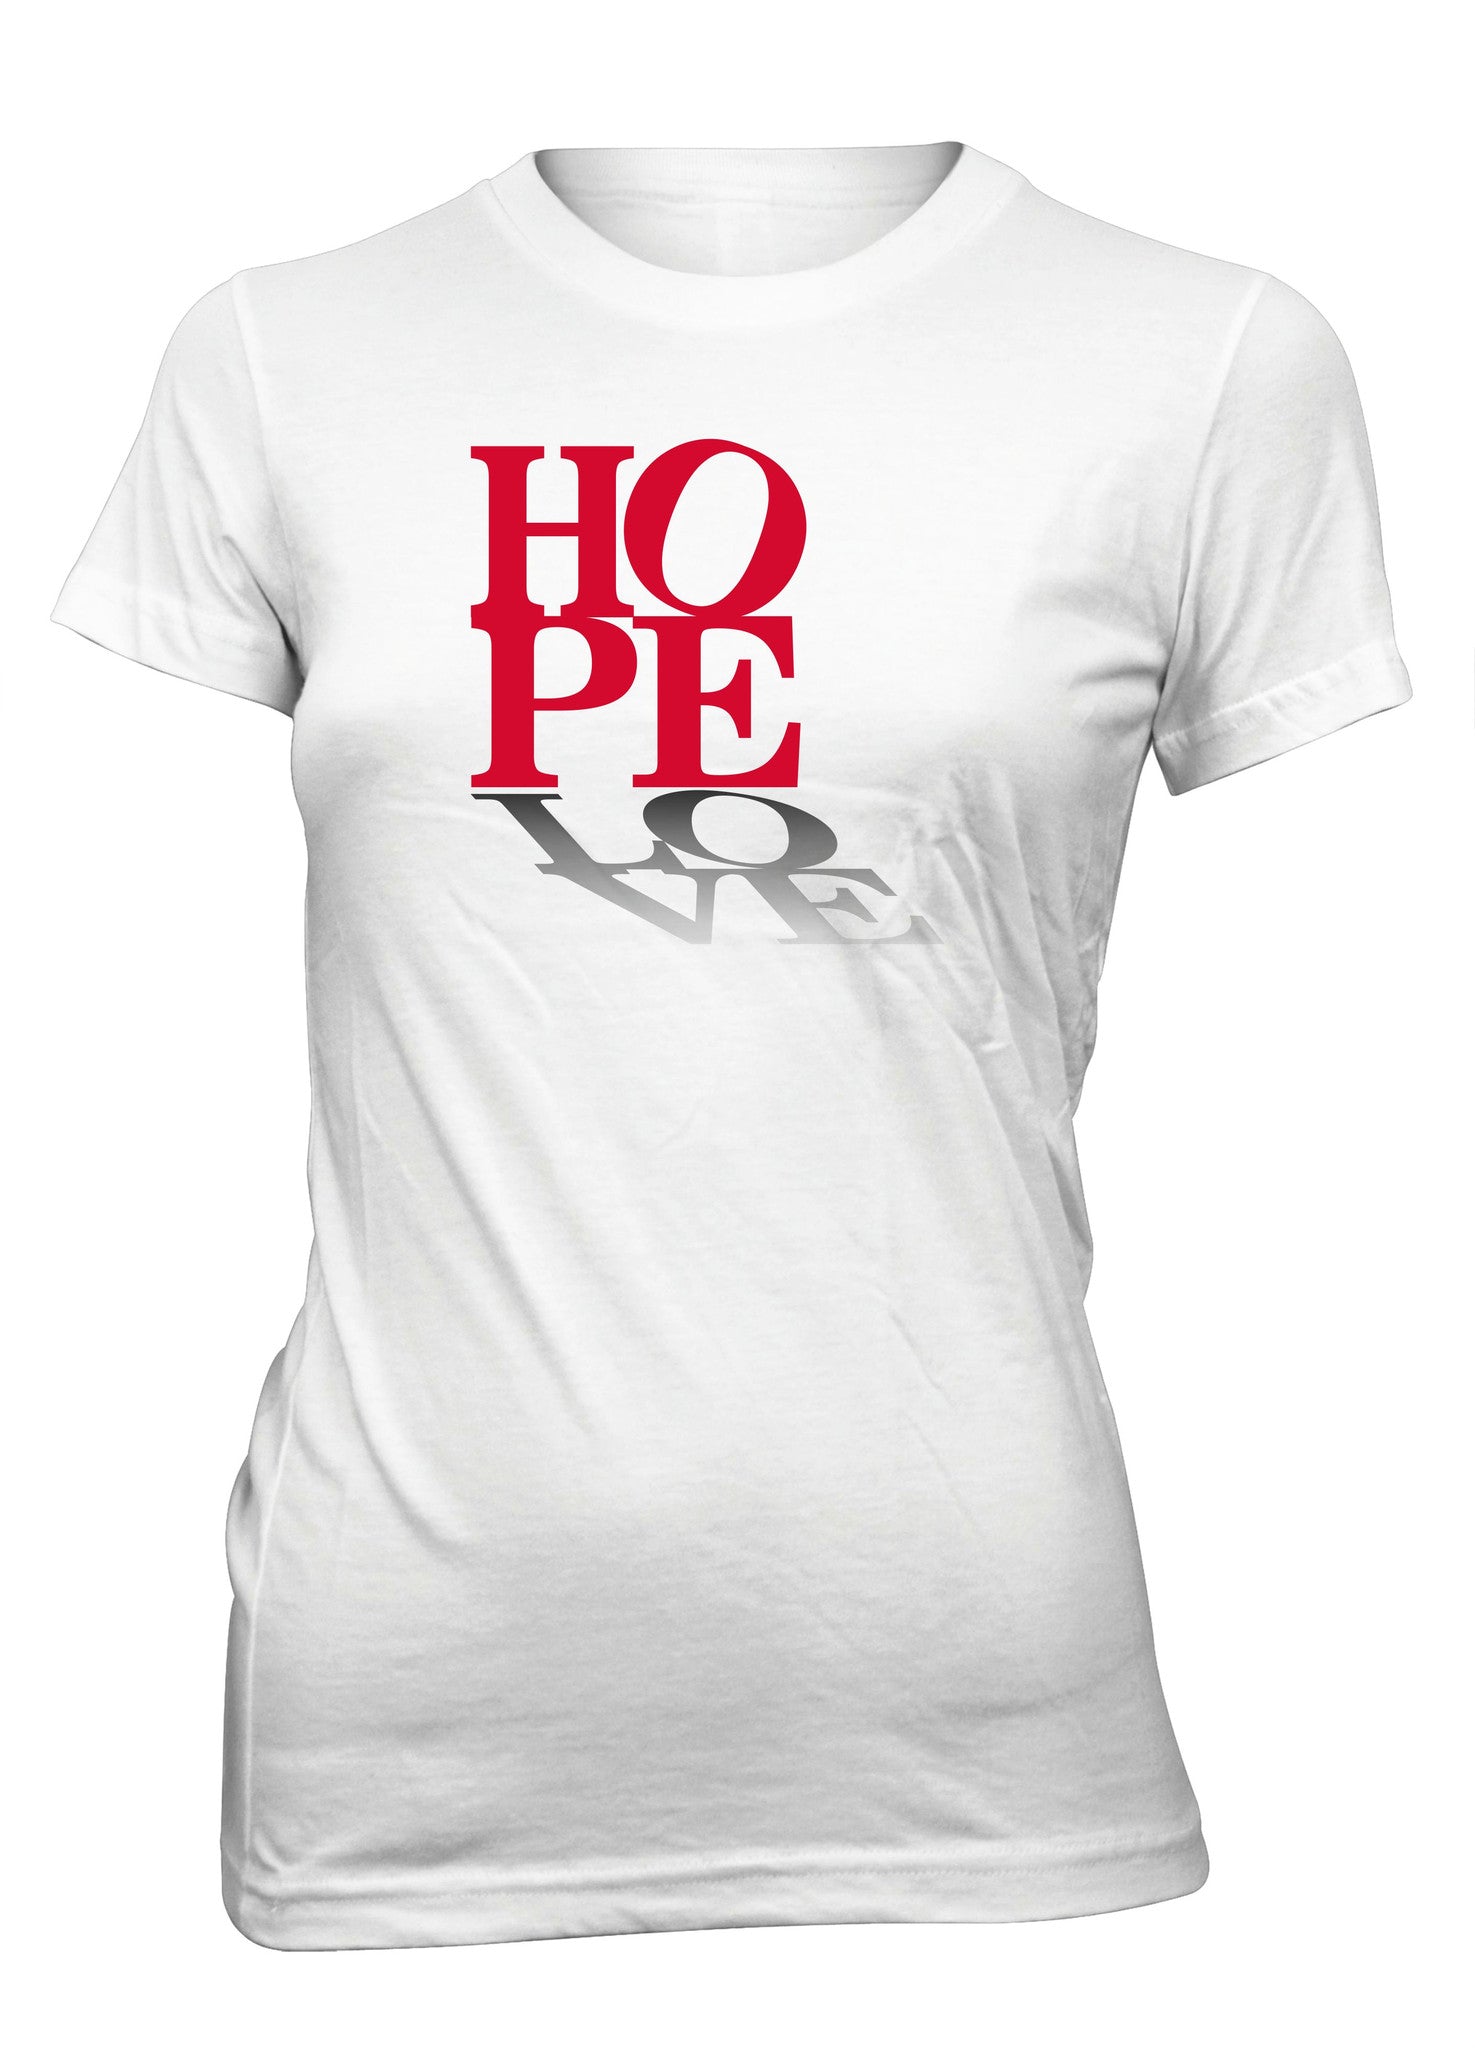 Hope Love Peace Positive Faith T-Shirt for Juniors